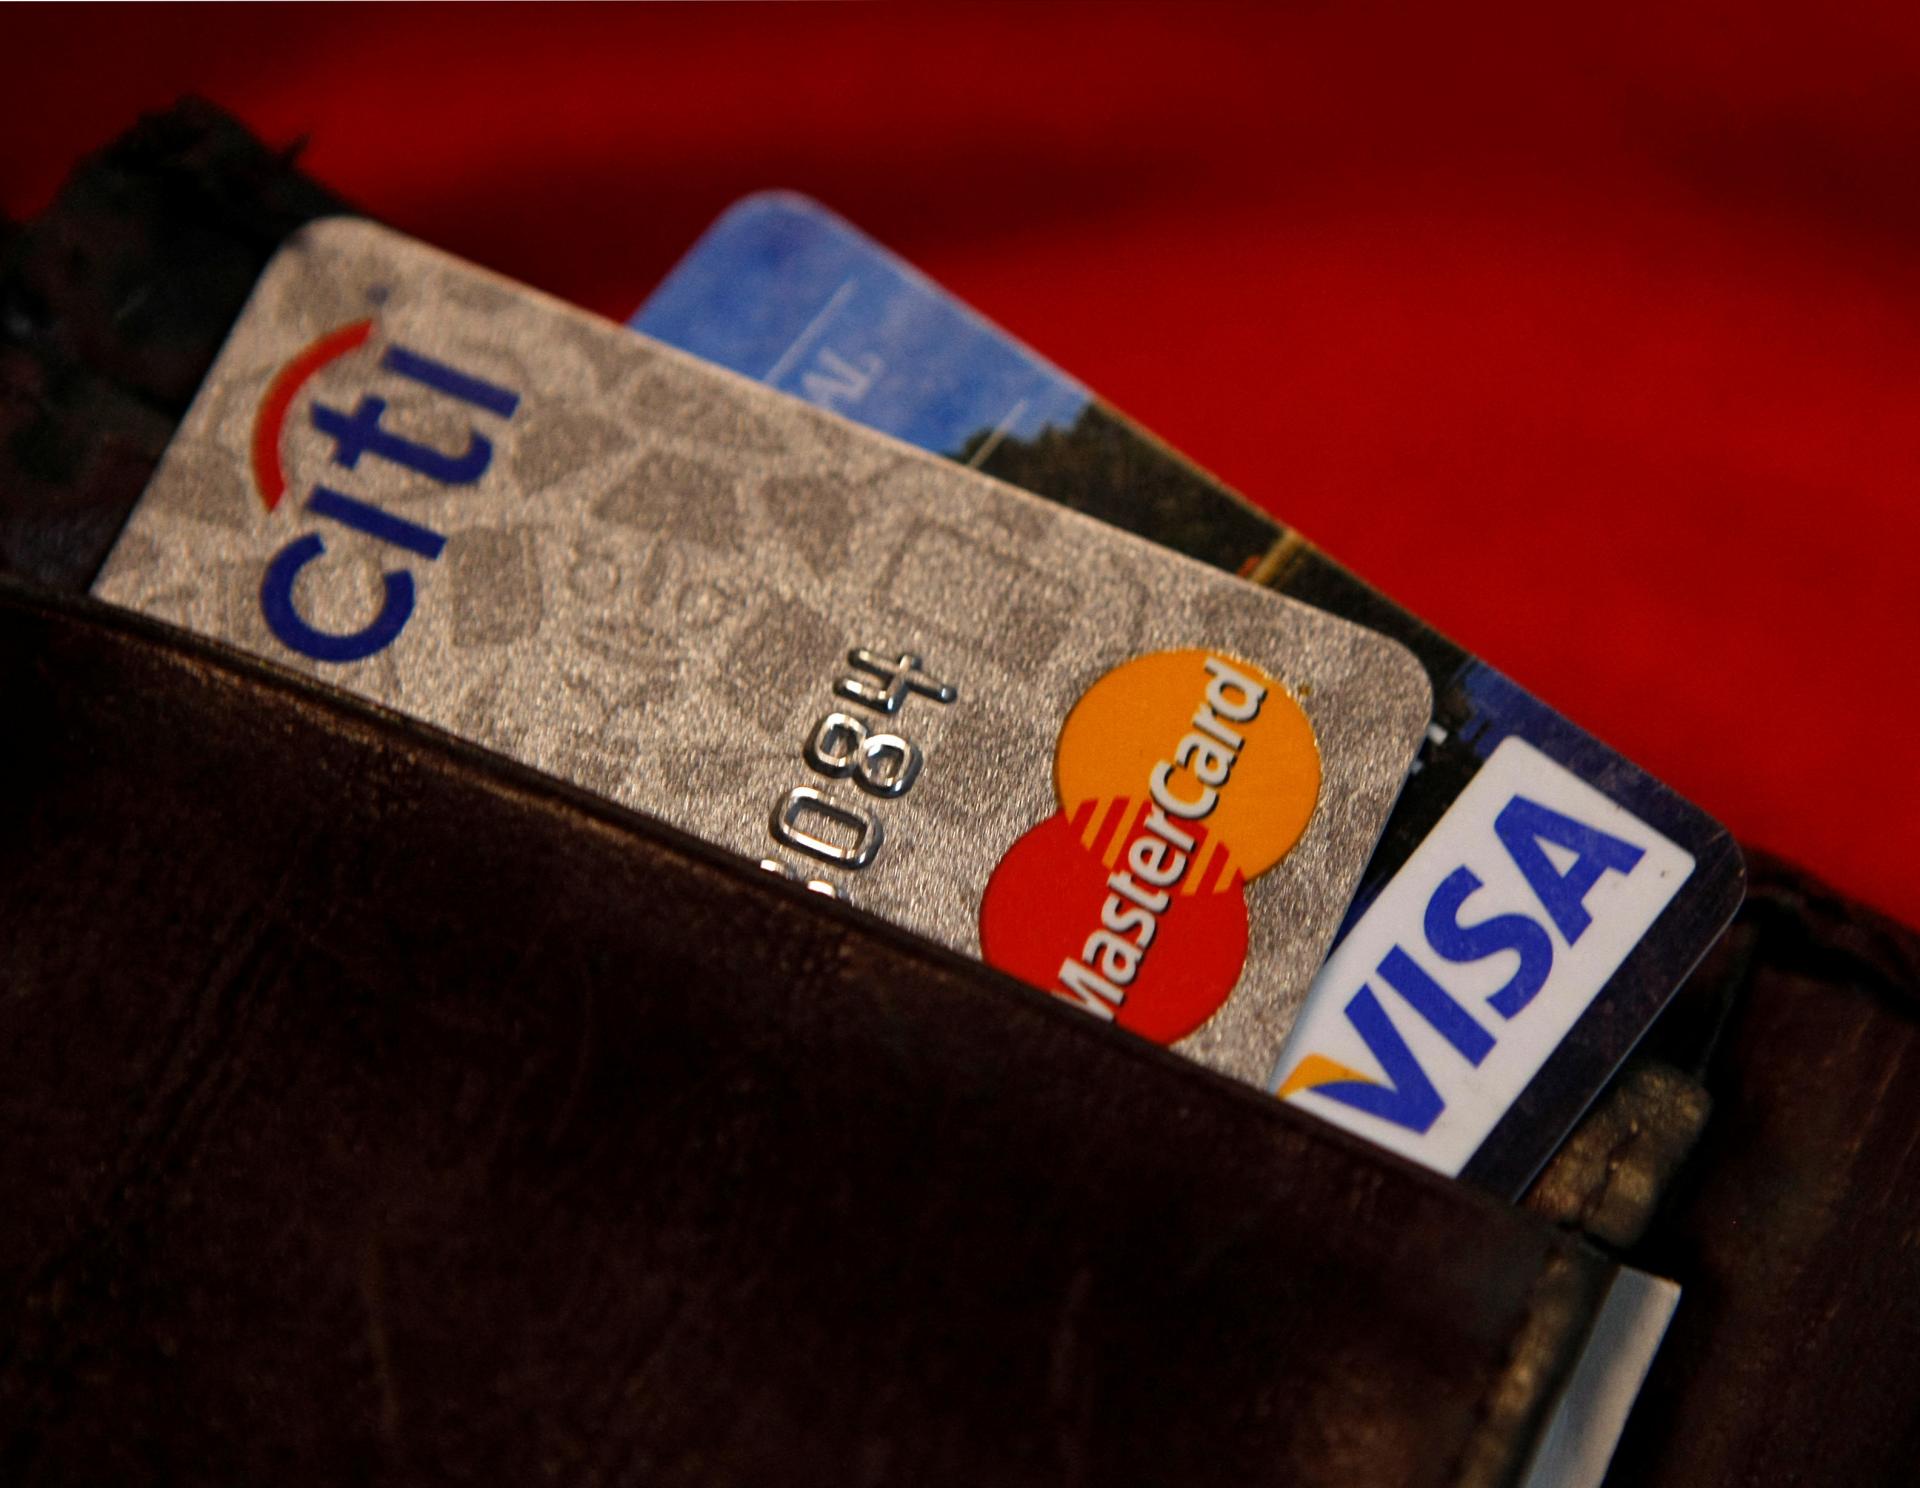 Turecko obmedzí používanie kreditných kariet, chce znížiť odliv devíz do zahraničia